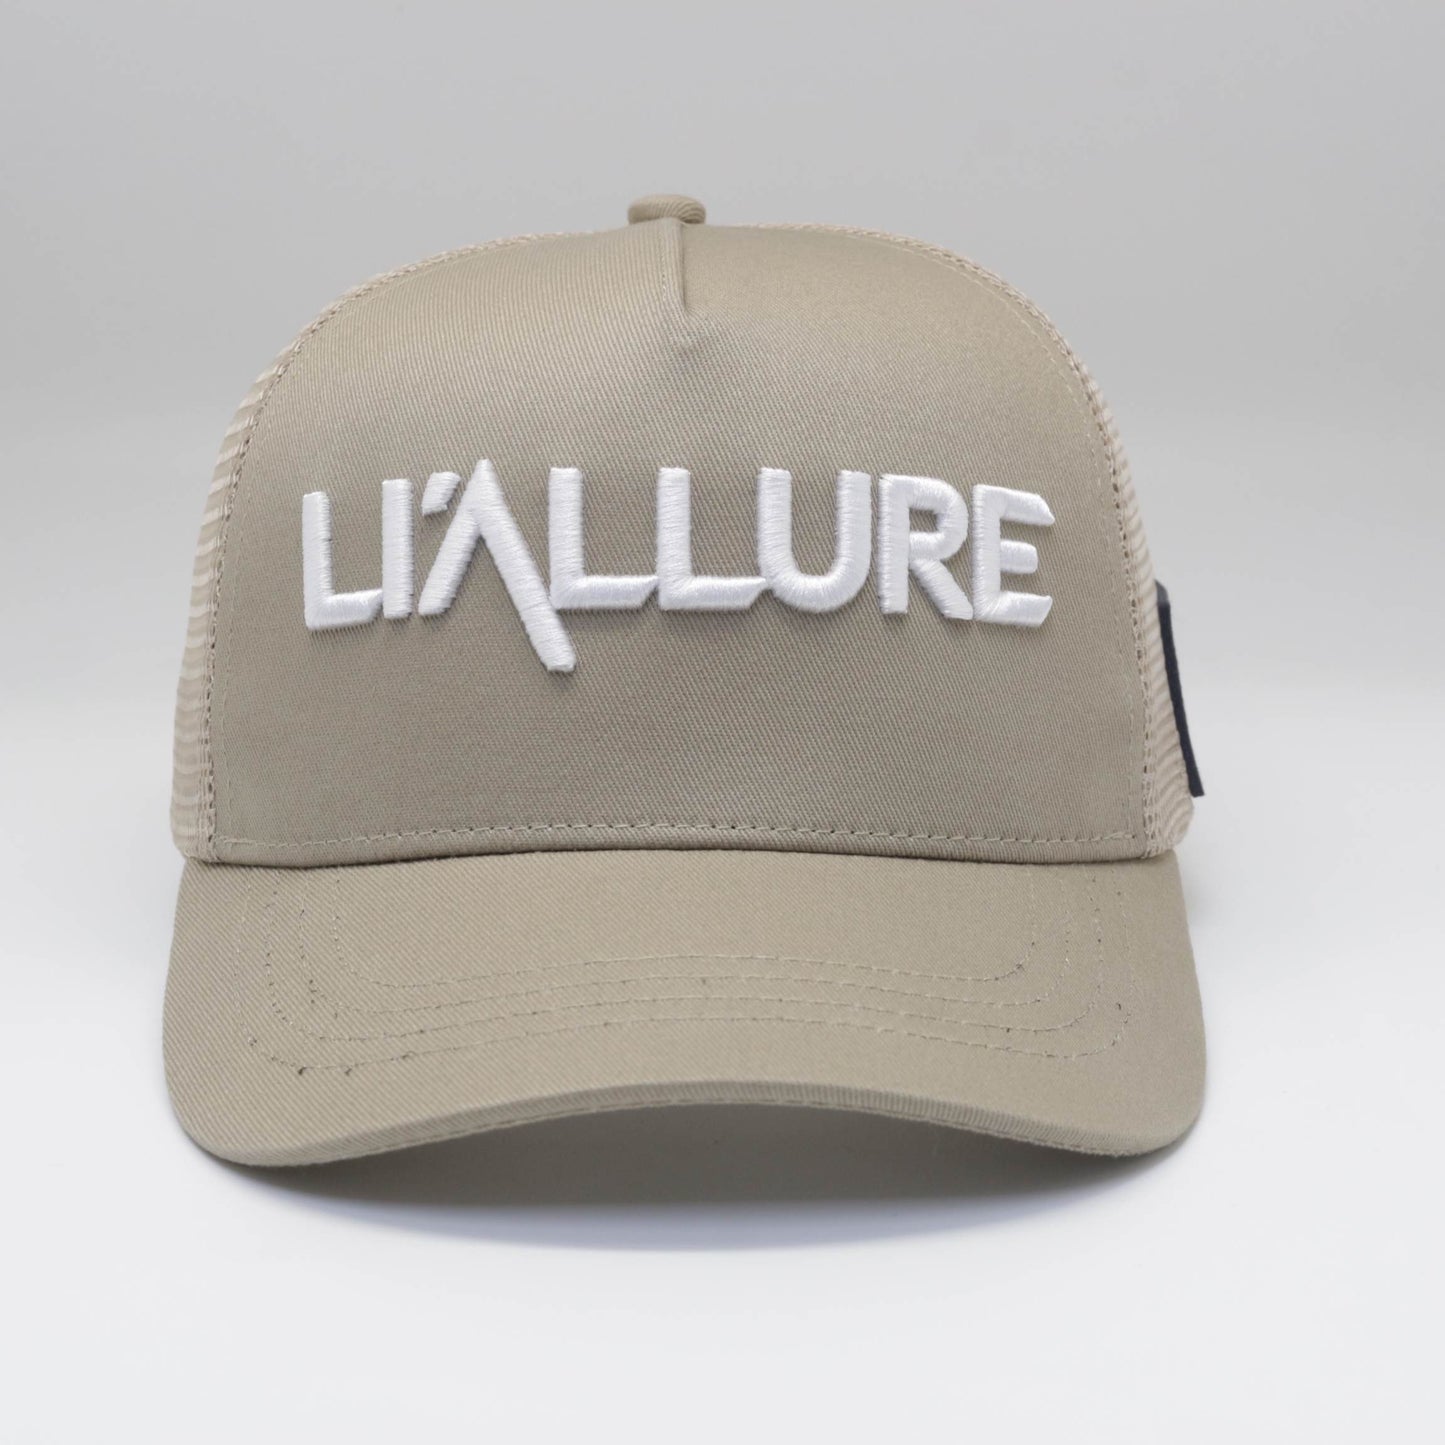 Li’allure Hat